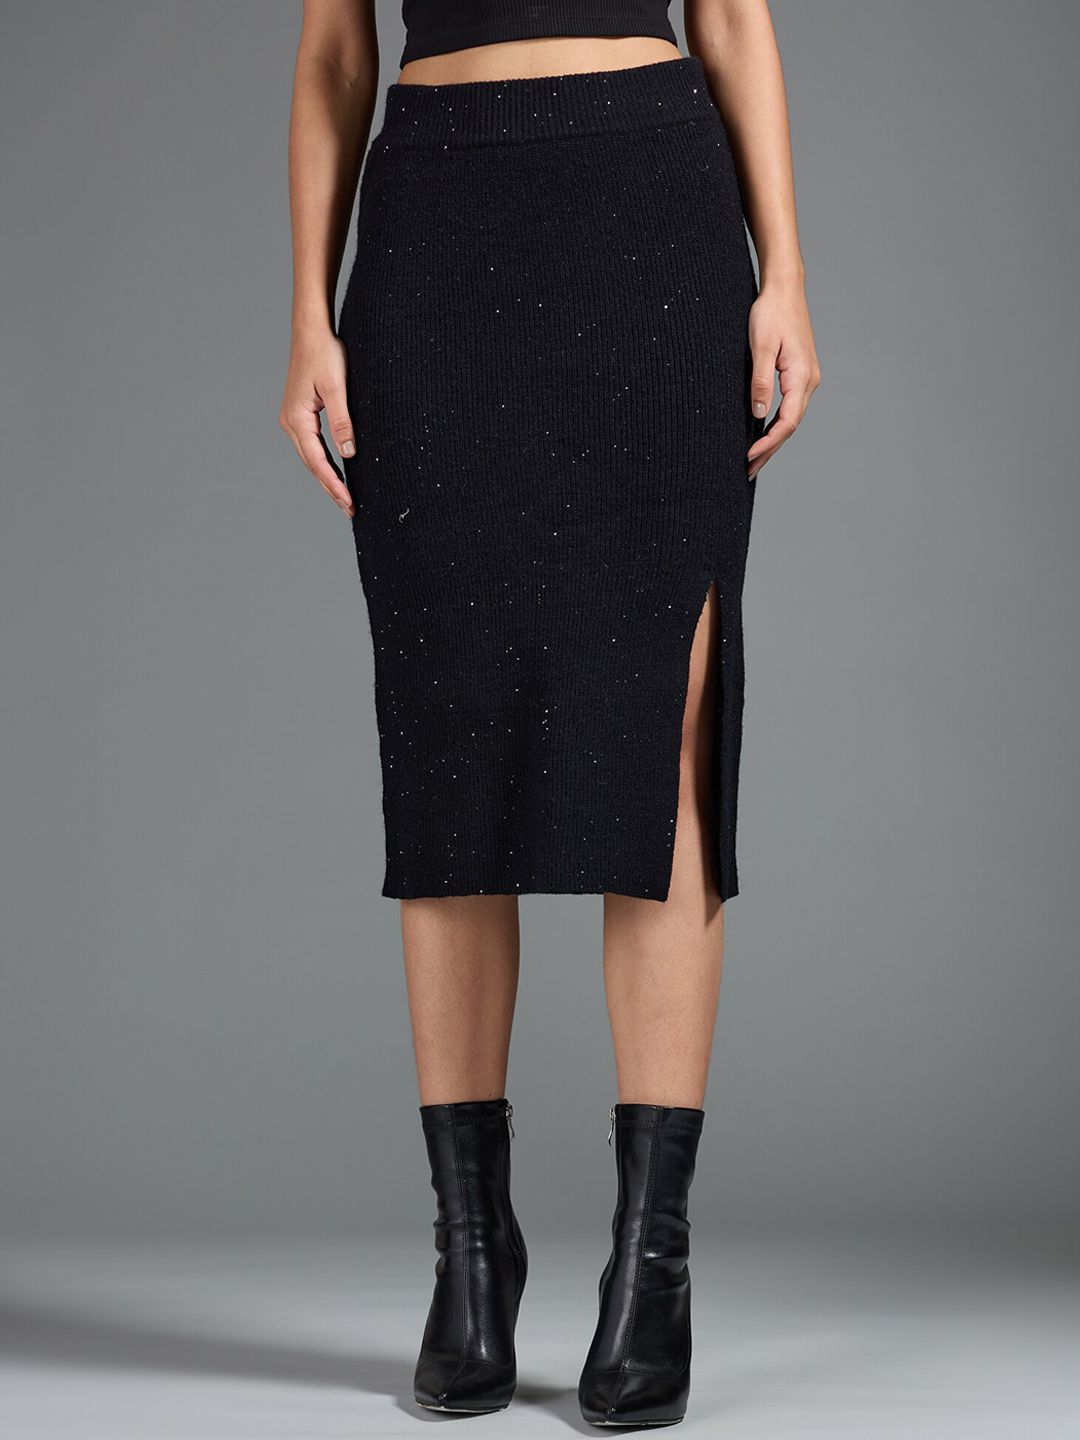 20Dresses Black Embellished Acrylic Sheath Midi Skirt Price in India